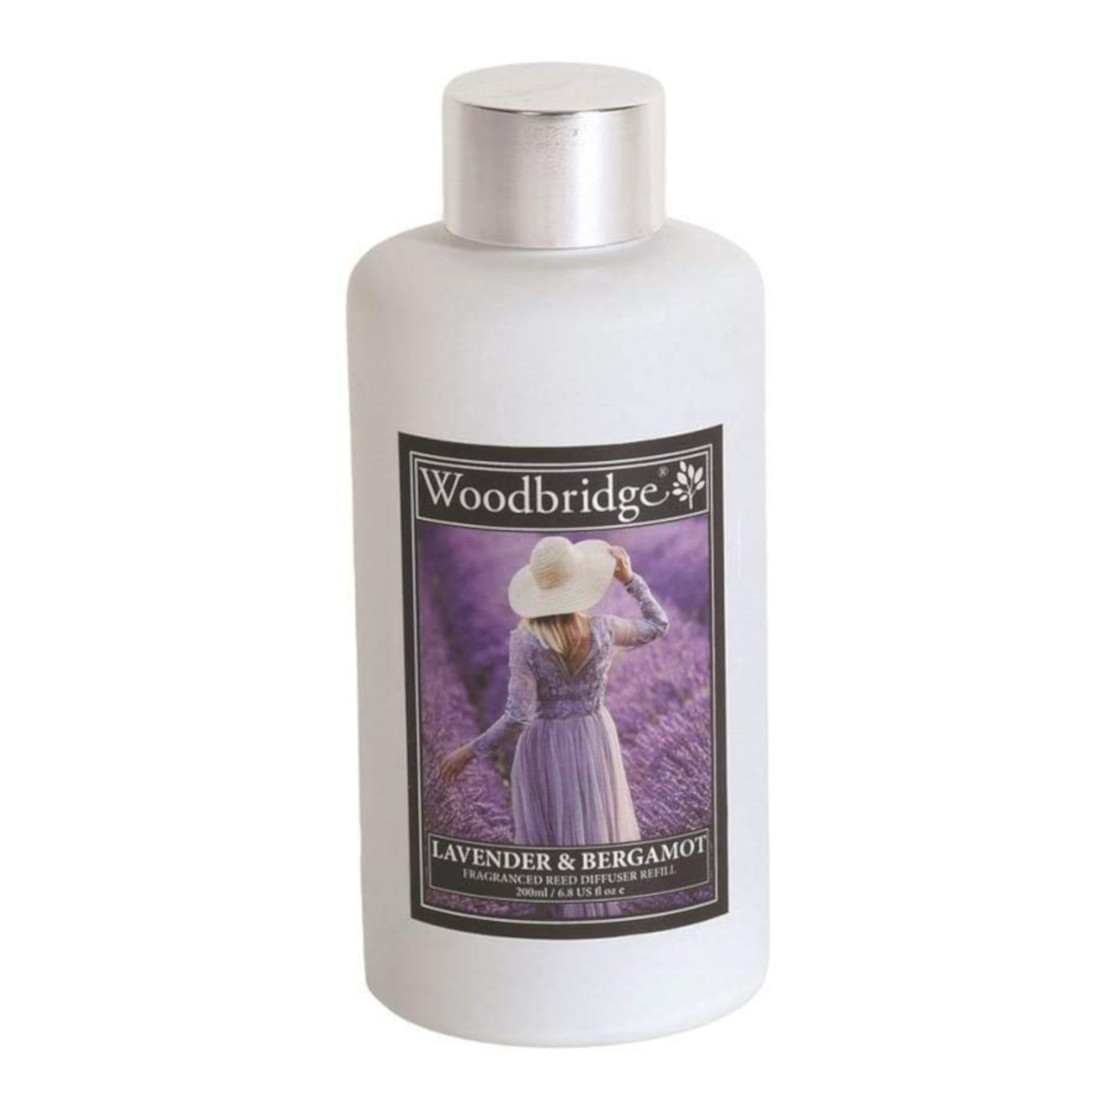 Woodbridge Lavender & Bergamot Diffuser Refill 200ml